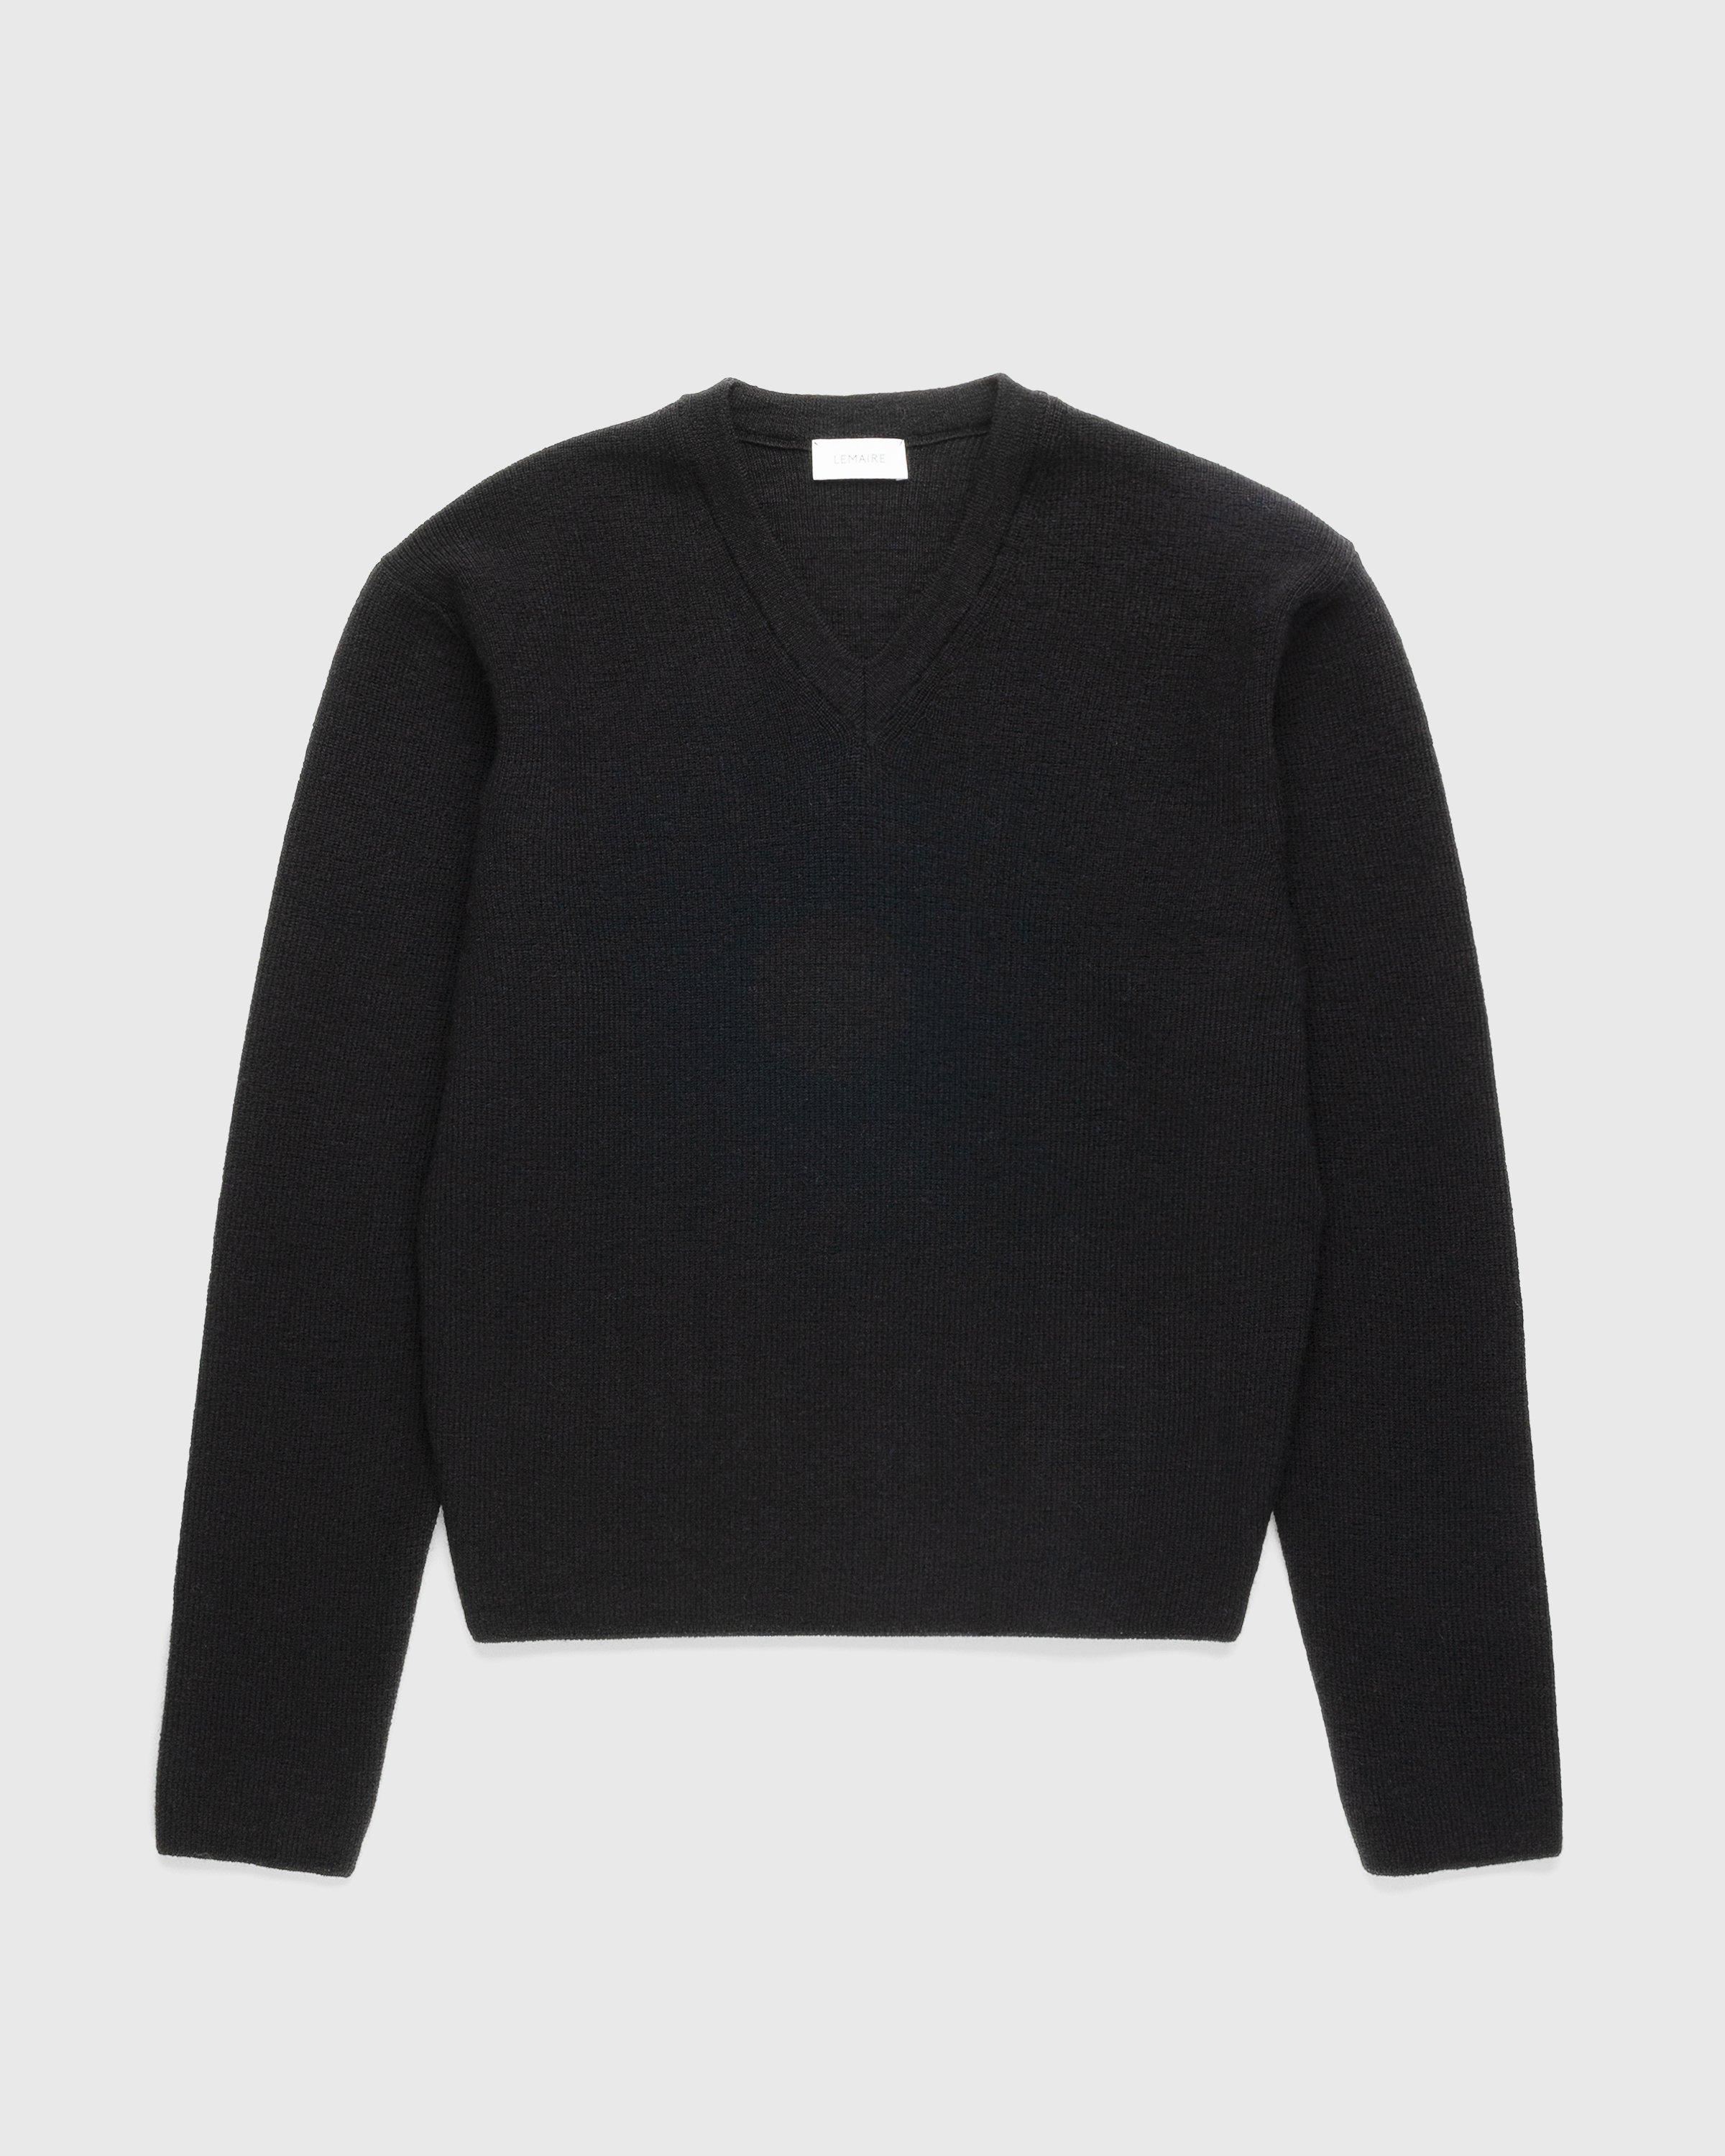 Lemaire - V Neck Sweater Black - Clothing - Multi - Image 1